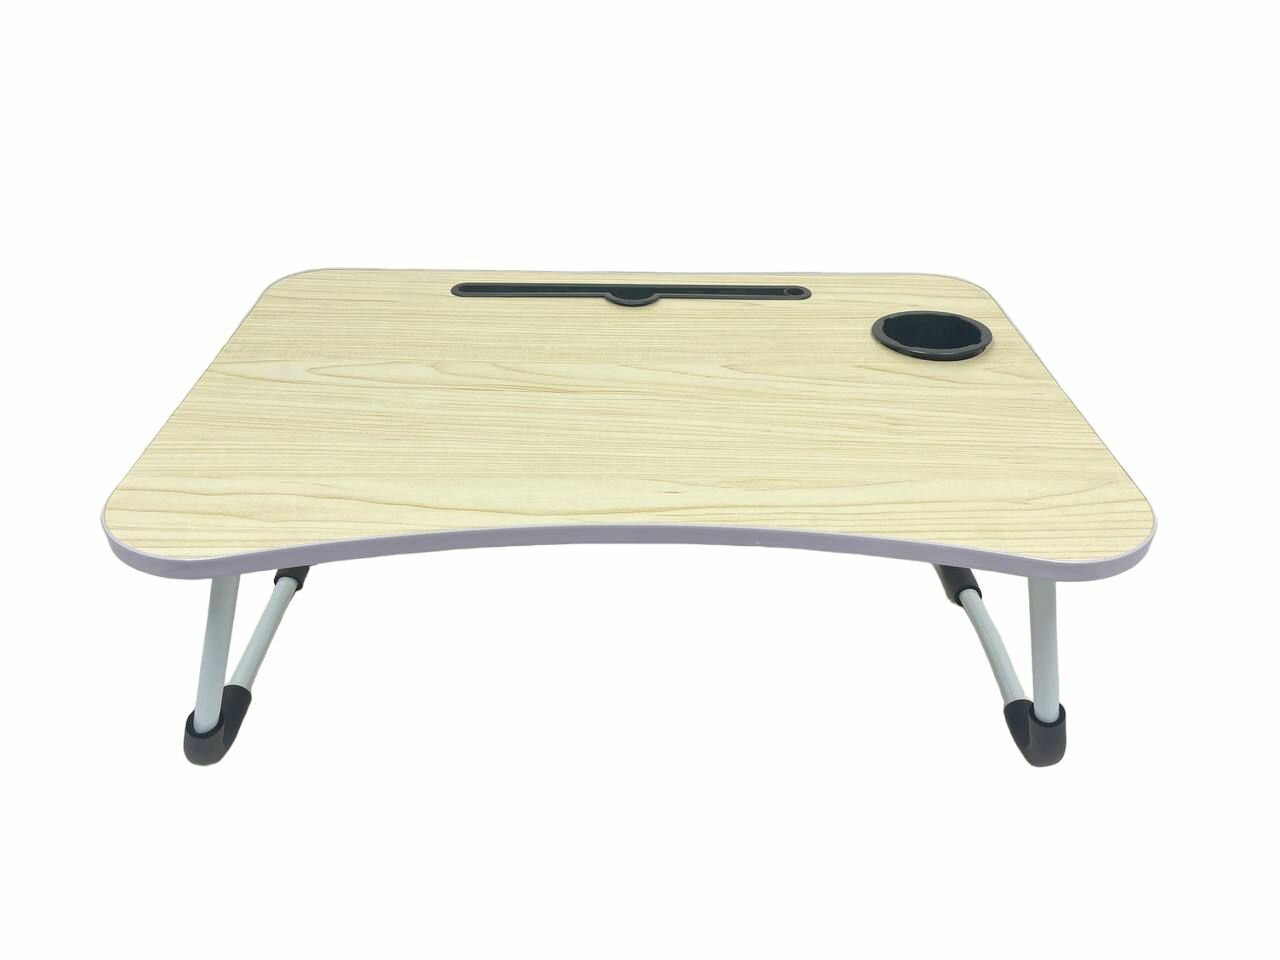 Подставка столик для ноутбука Classmark складной рабочий стол, для завтрака в кровать, работы и отдыха 60 х 40 х 27.5 см, бежевый, белый